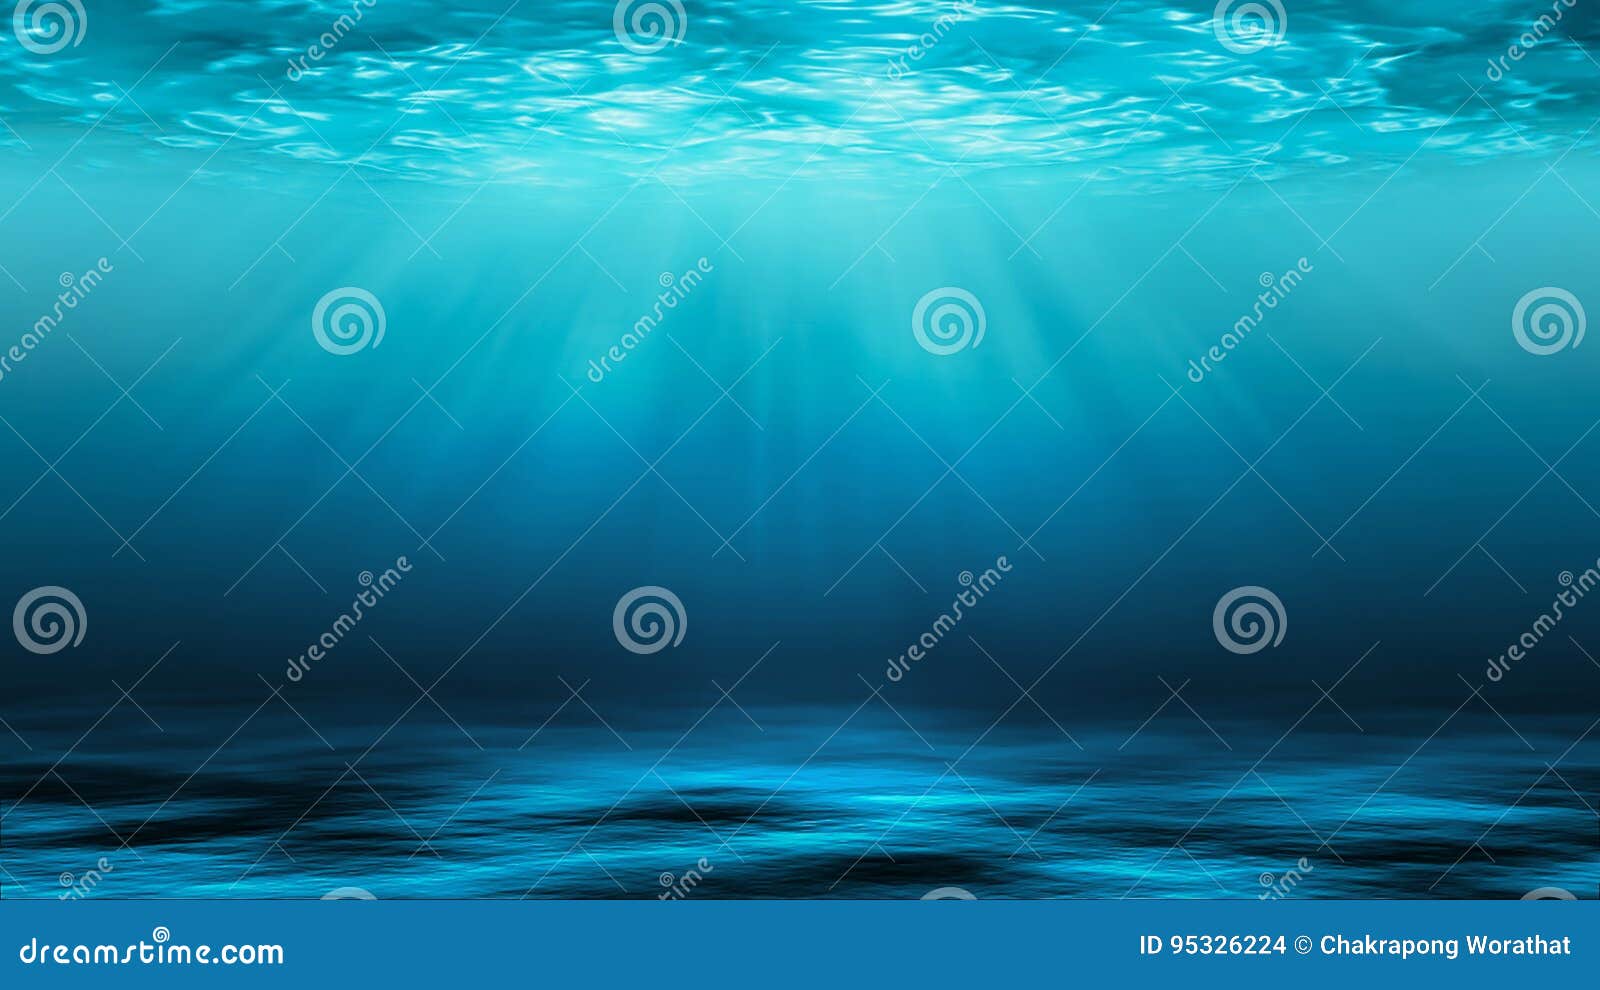 sunbeams and sea deep or ocean underwater as a background.